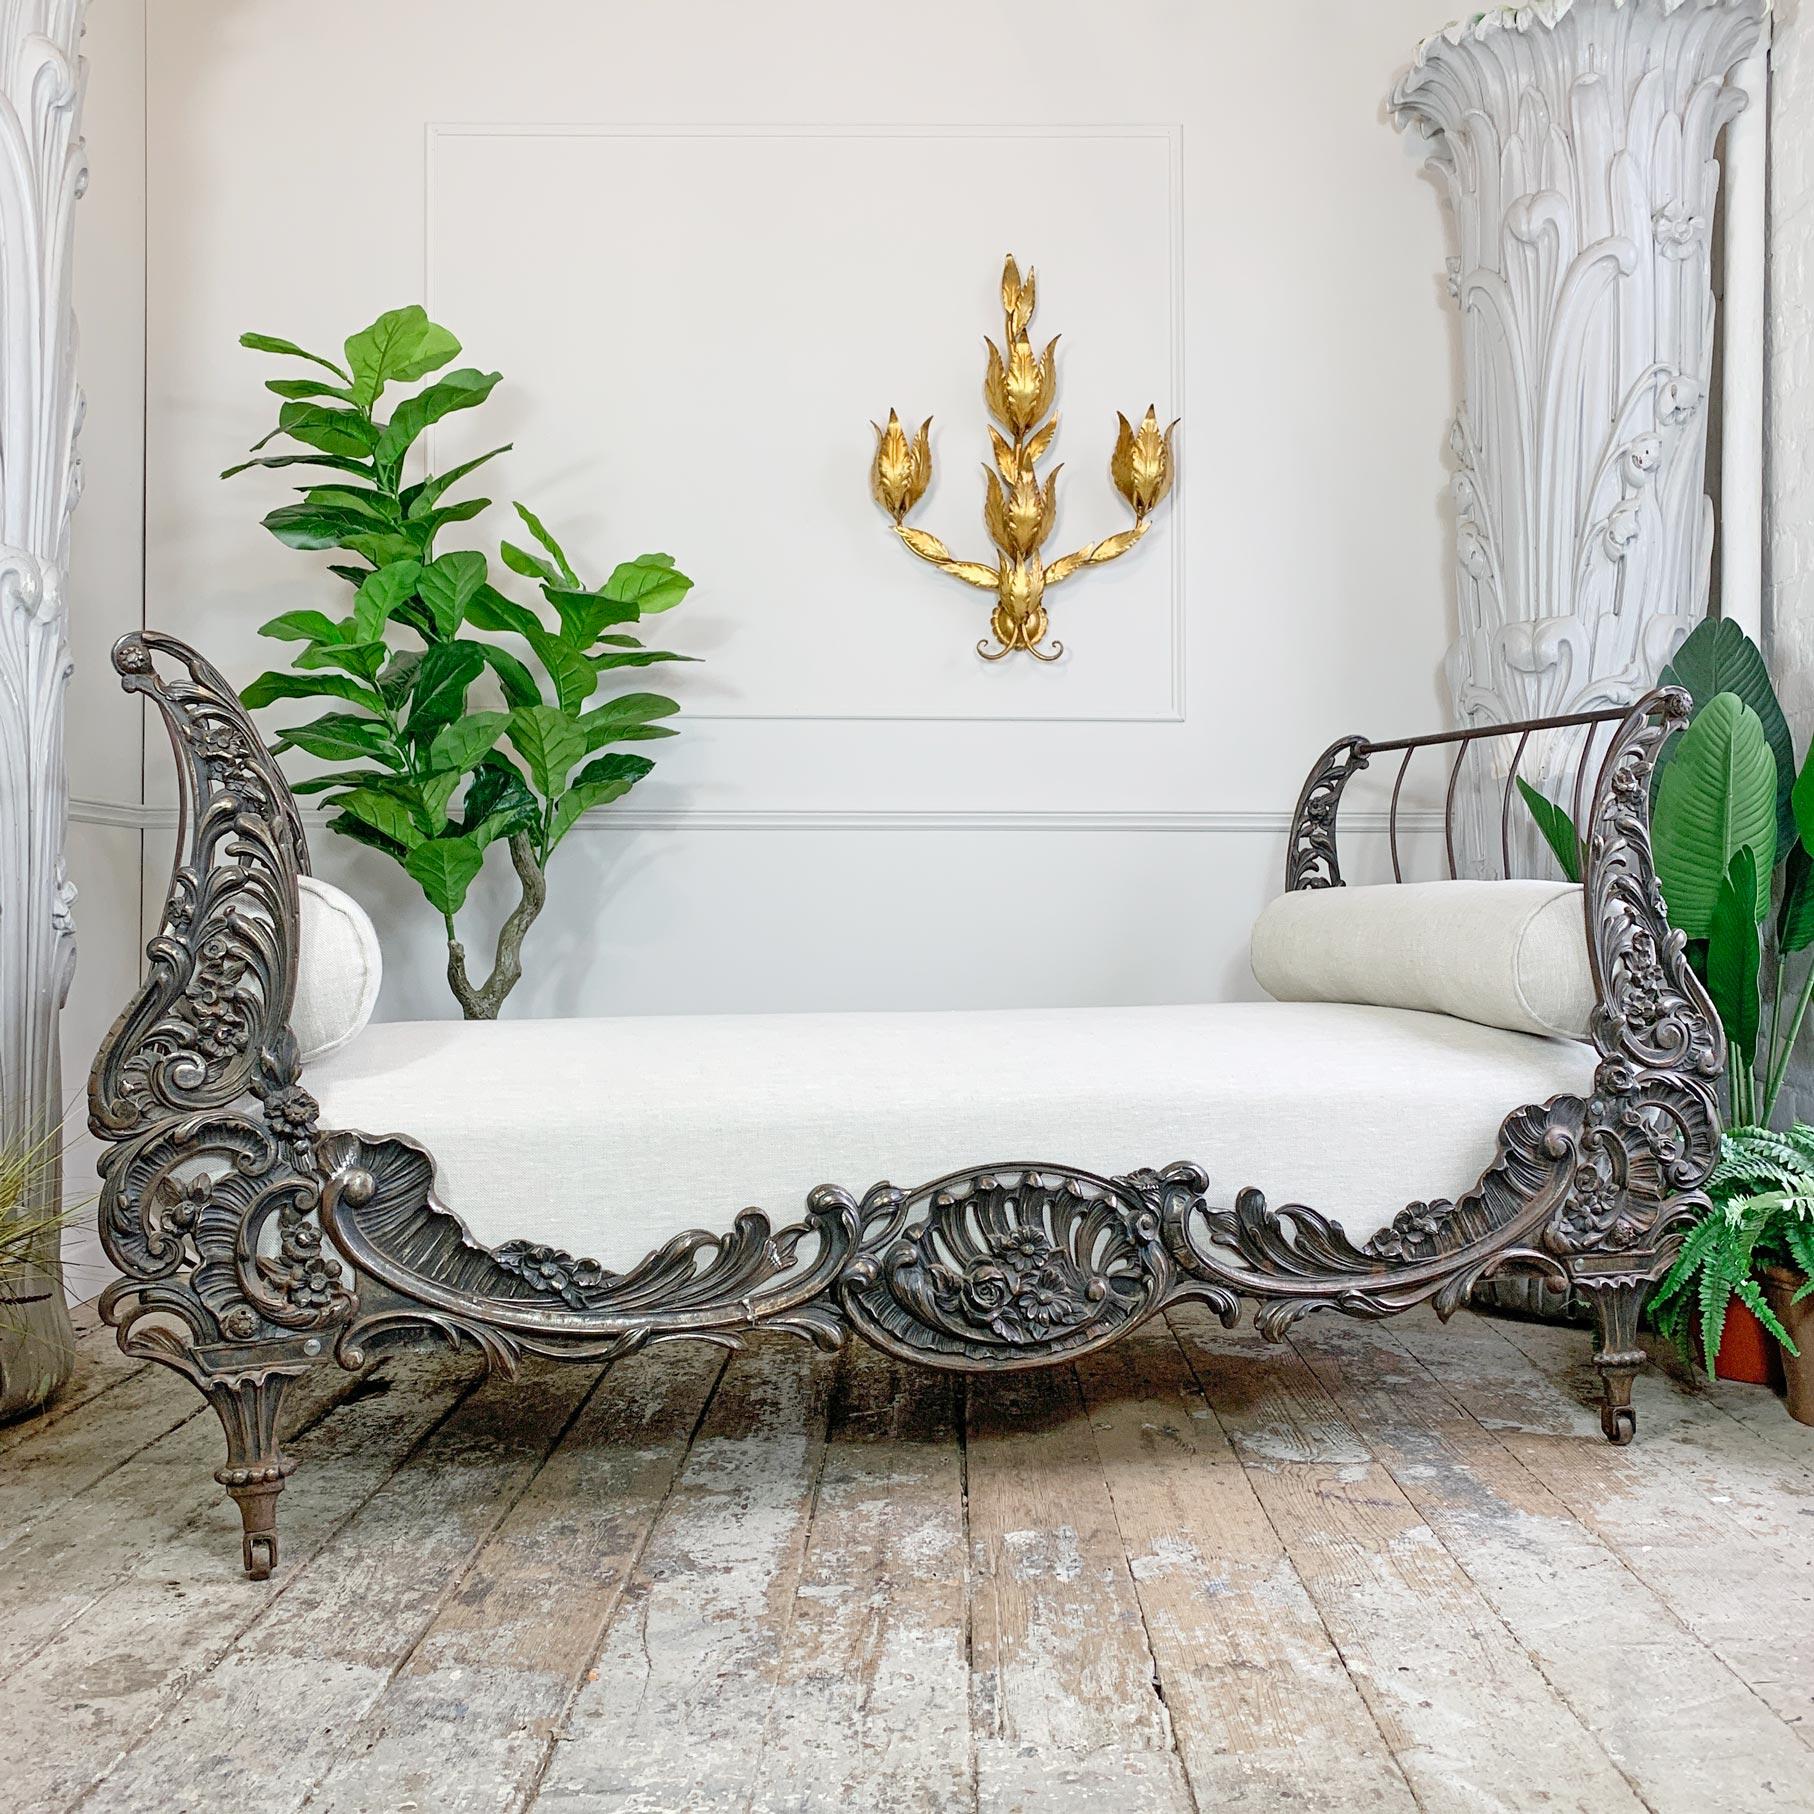 Un lit de jour en fonte absolument magnifique, fabriqué en France vers 1890. Le motif floral profondément moulé avec des feuilles d'acanthe et des volutes, il exsude les influences du début du Nouveau français.

Le sommier en bois a été entièrement